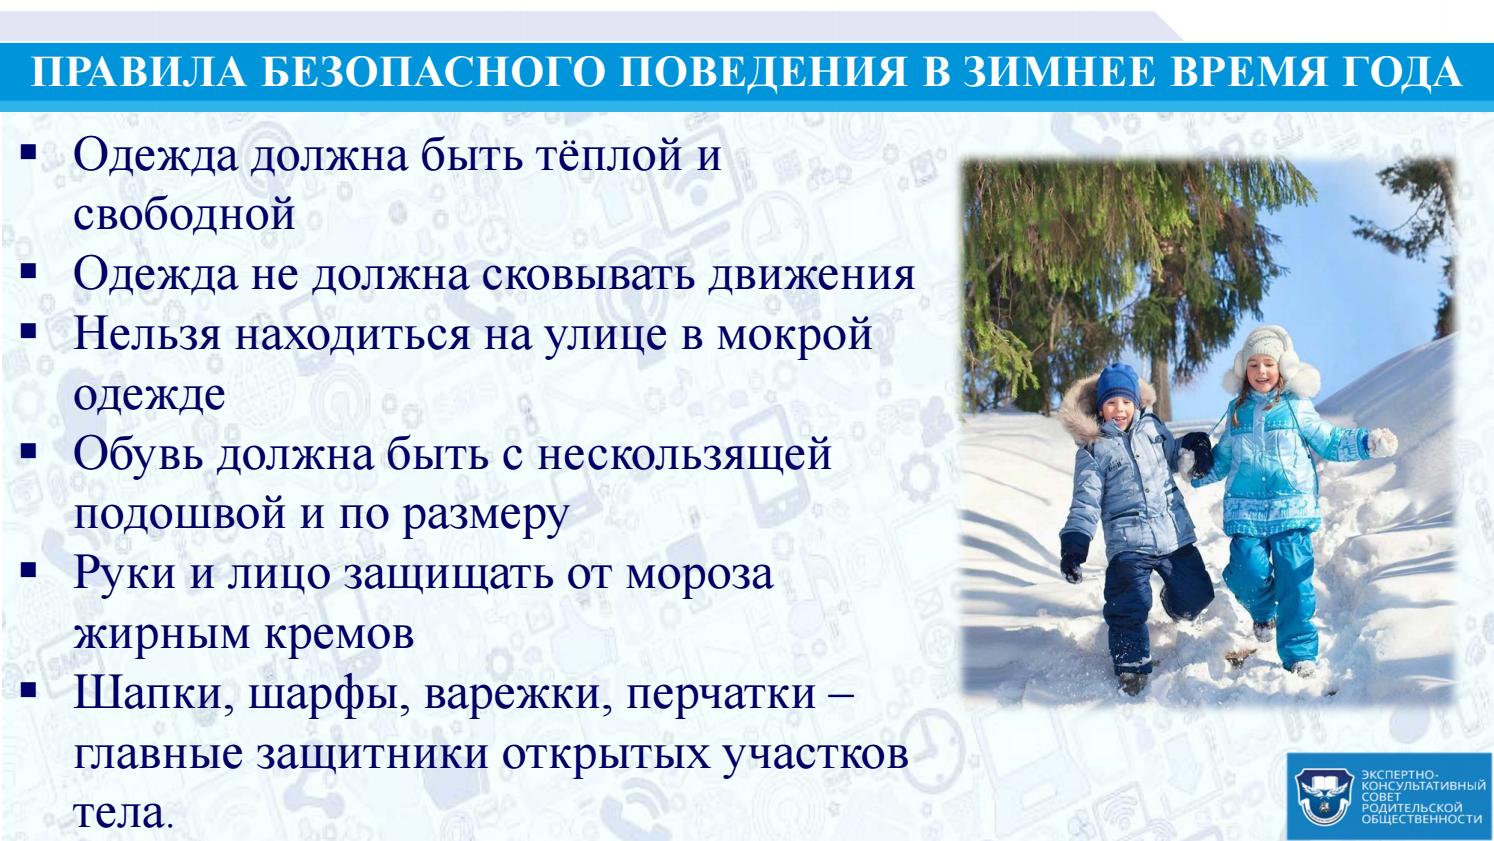 Можно ли гулять больному. Правила поведения зимой. Правила поведения зимой для детей. Правила поведения зимой на улице. Правила безопасного поведения на улице зимой.